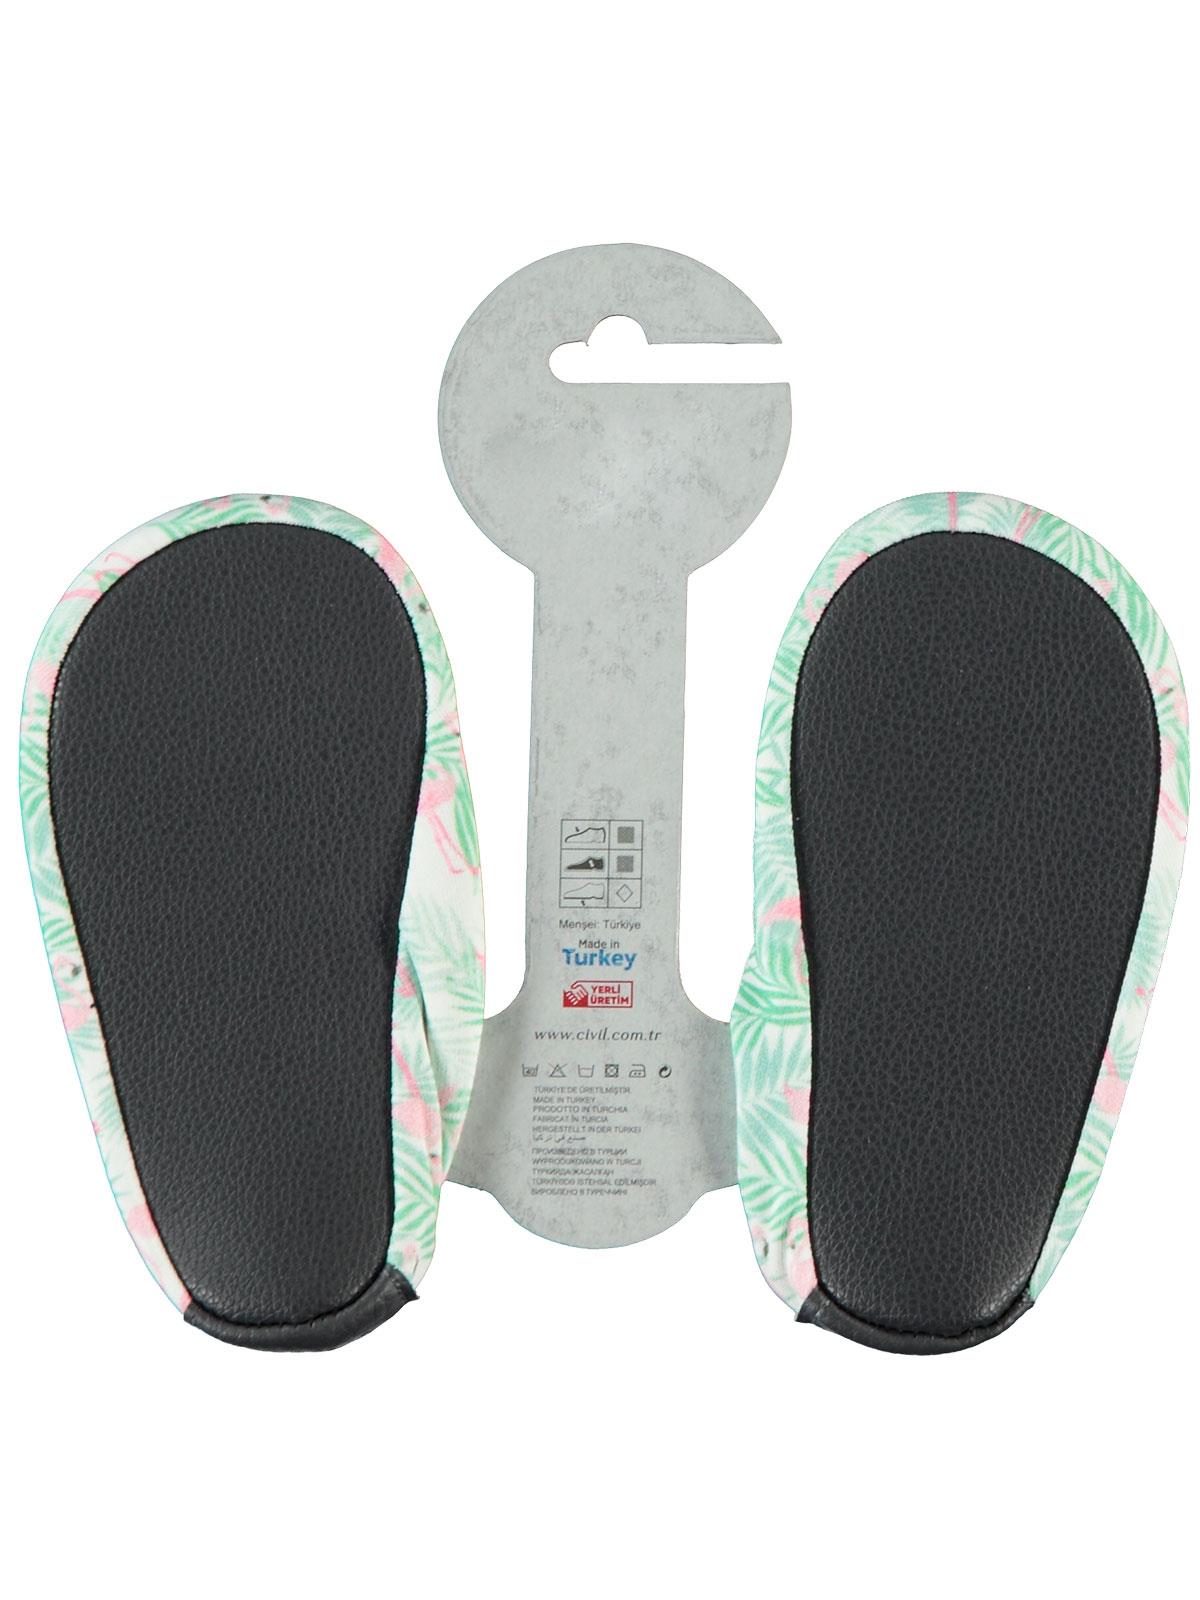 Civil Kız Çocuk Deniz ve Havuz Ayakkabısı 18-26 Numara Mint Yeşili